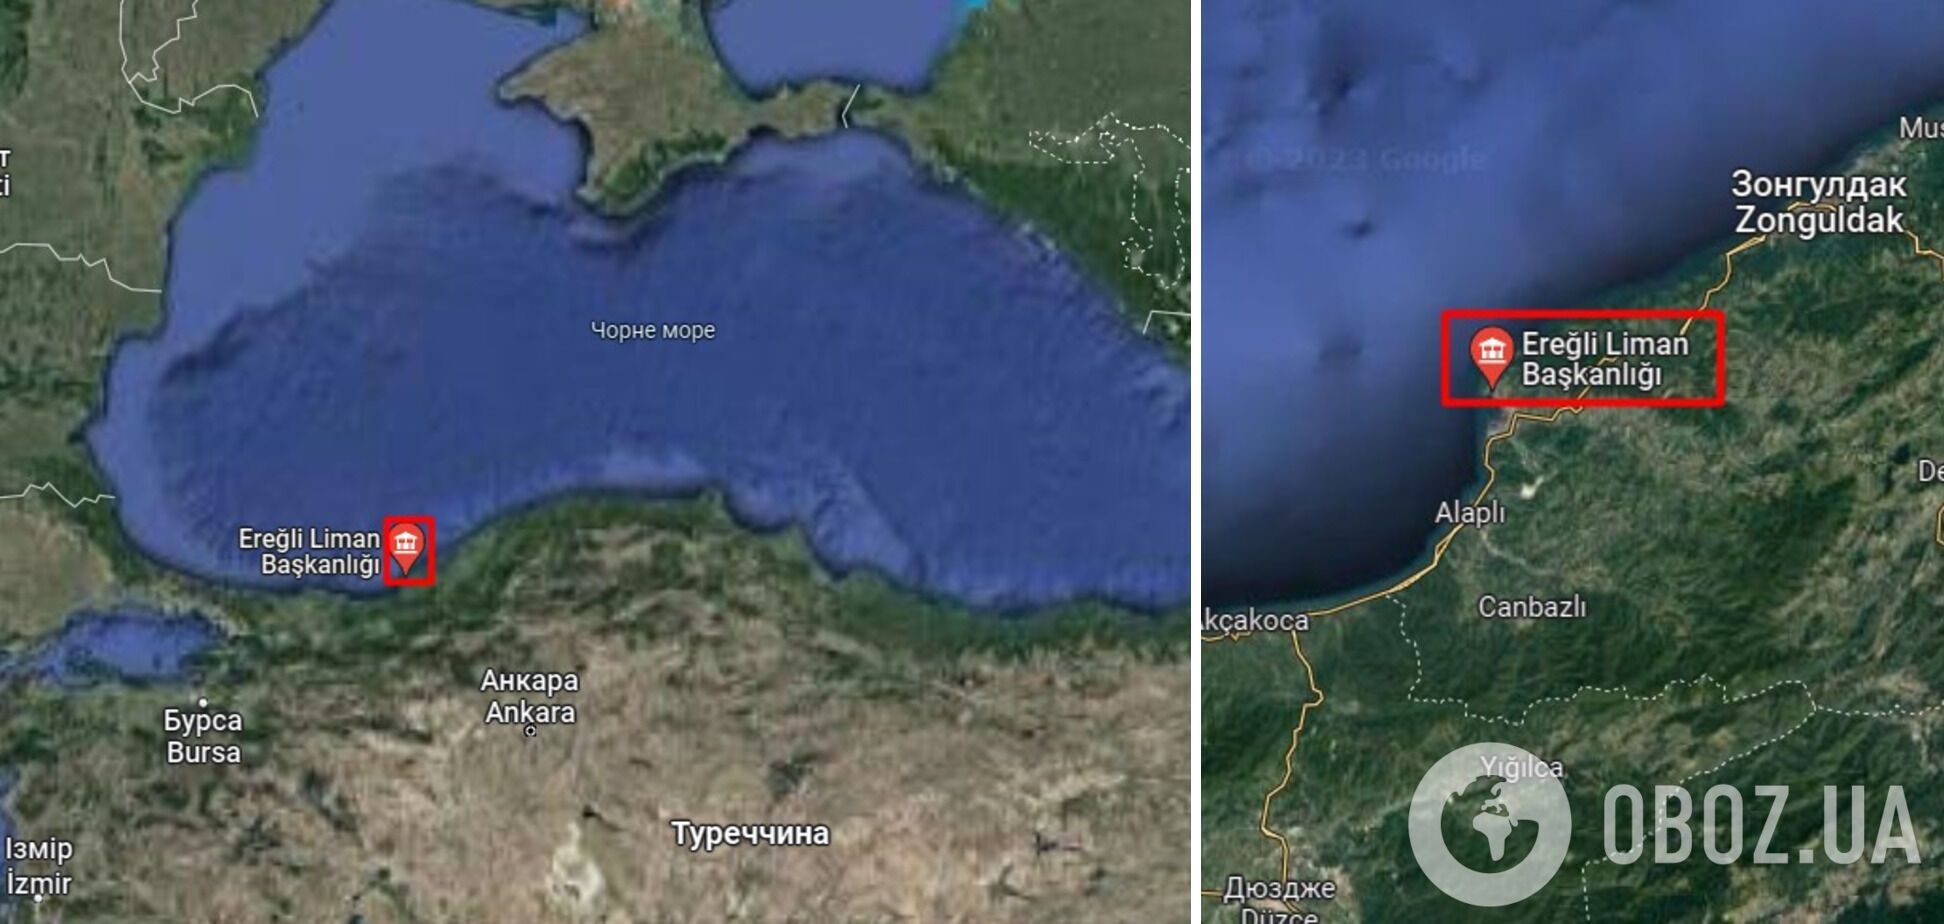 Турецкое судно, пропавшее в Черном море во время шторма, затонуло: на его борту было 12 членов экипажа